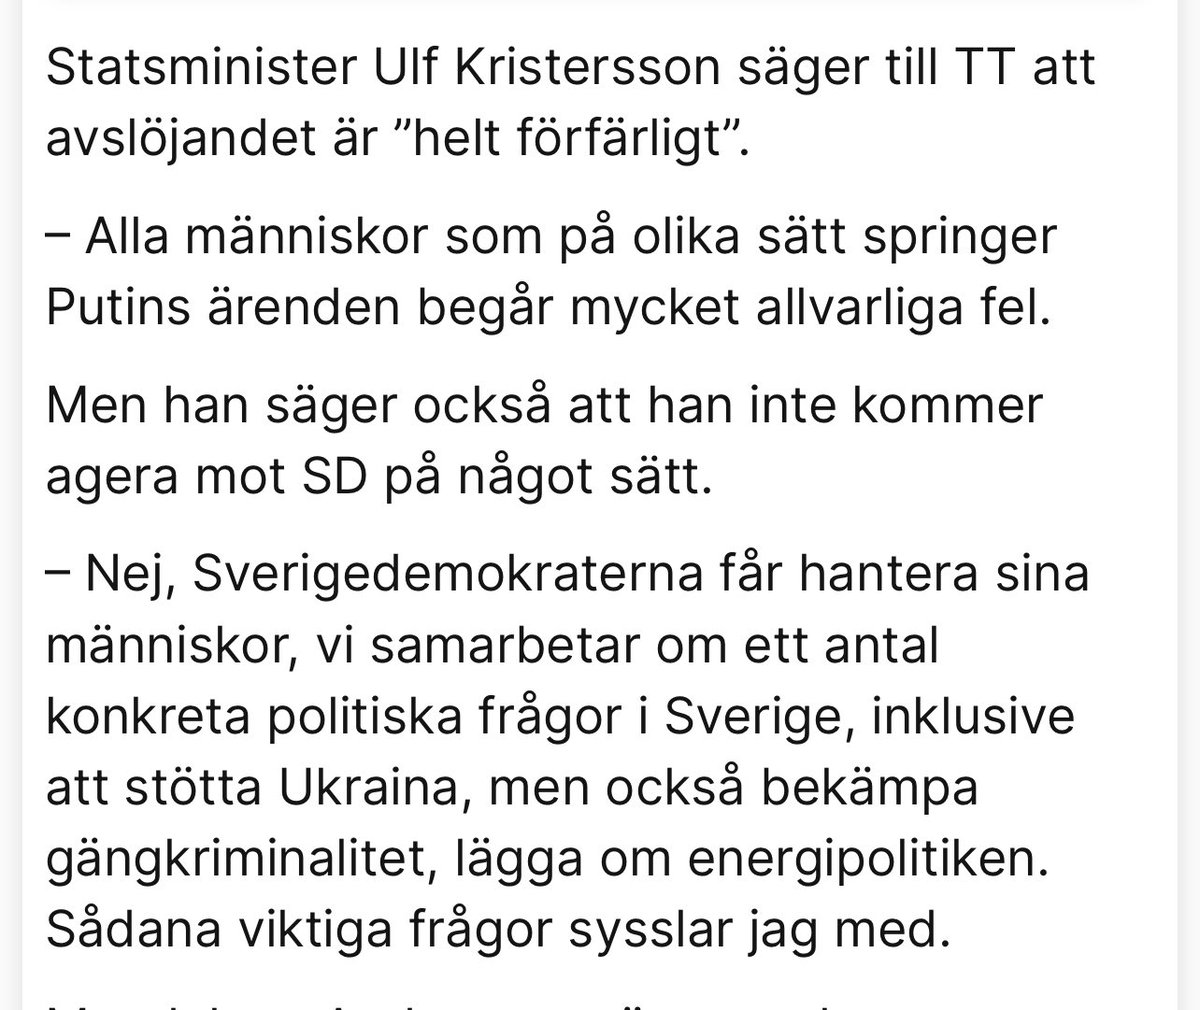 Ulf Kristersson illustrerar precis som vanligt politikens impotens. Saker är ”helt förfärliga” men han kommer inte agera.